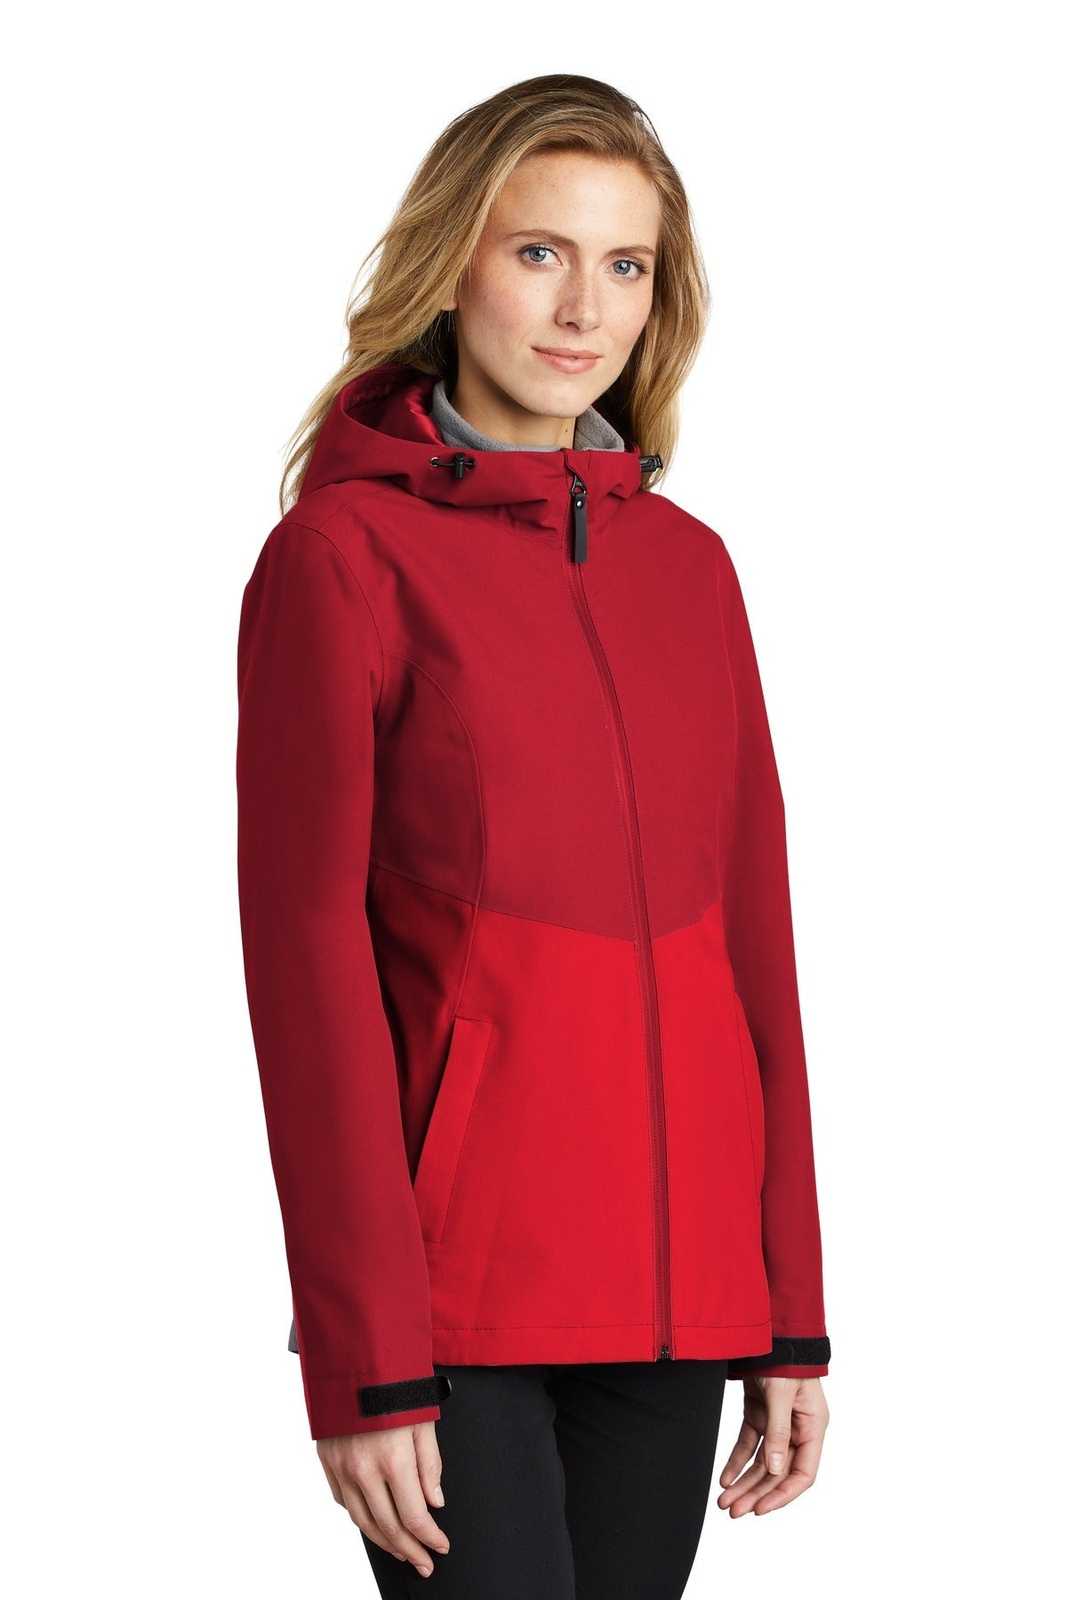 Port Authority L406 Ladies Tech Rain Jacket - Sangria True Red - HIT a Double - 4